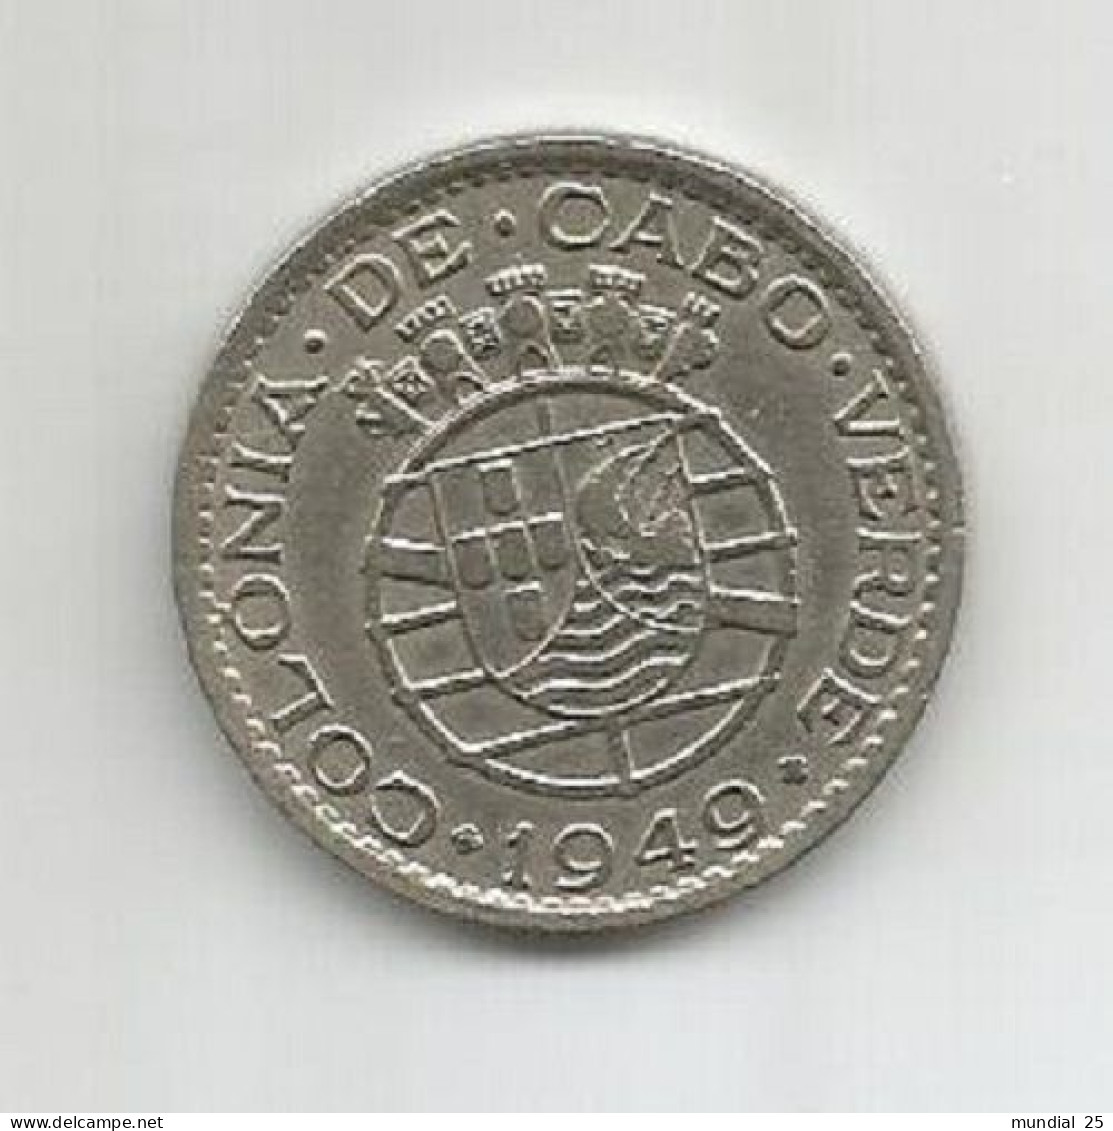 CAPE VERDE PORTUGAL 1$00 ESCUDO 1949 - Capo Verde